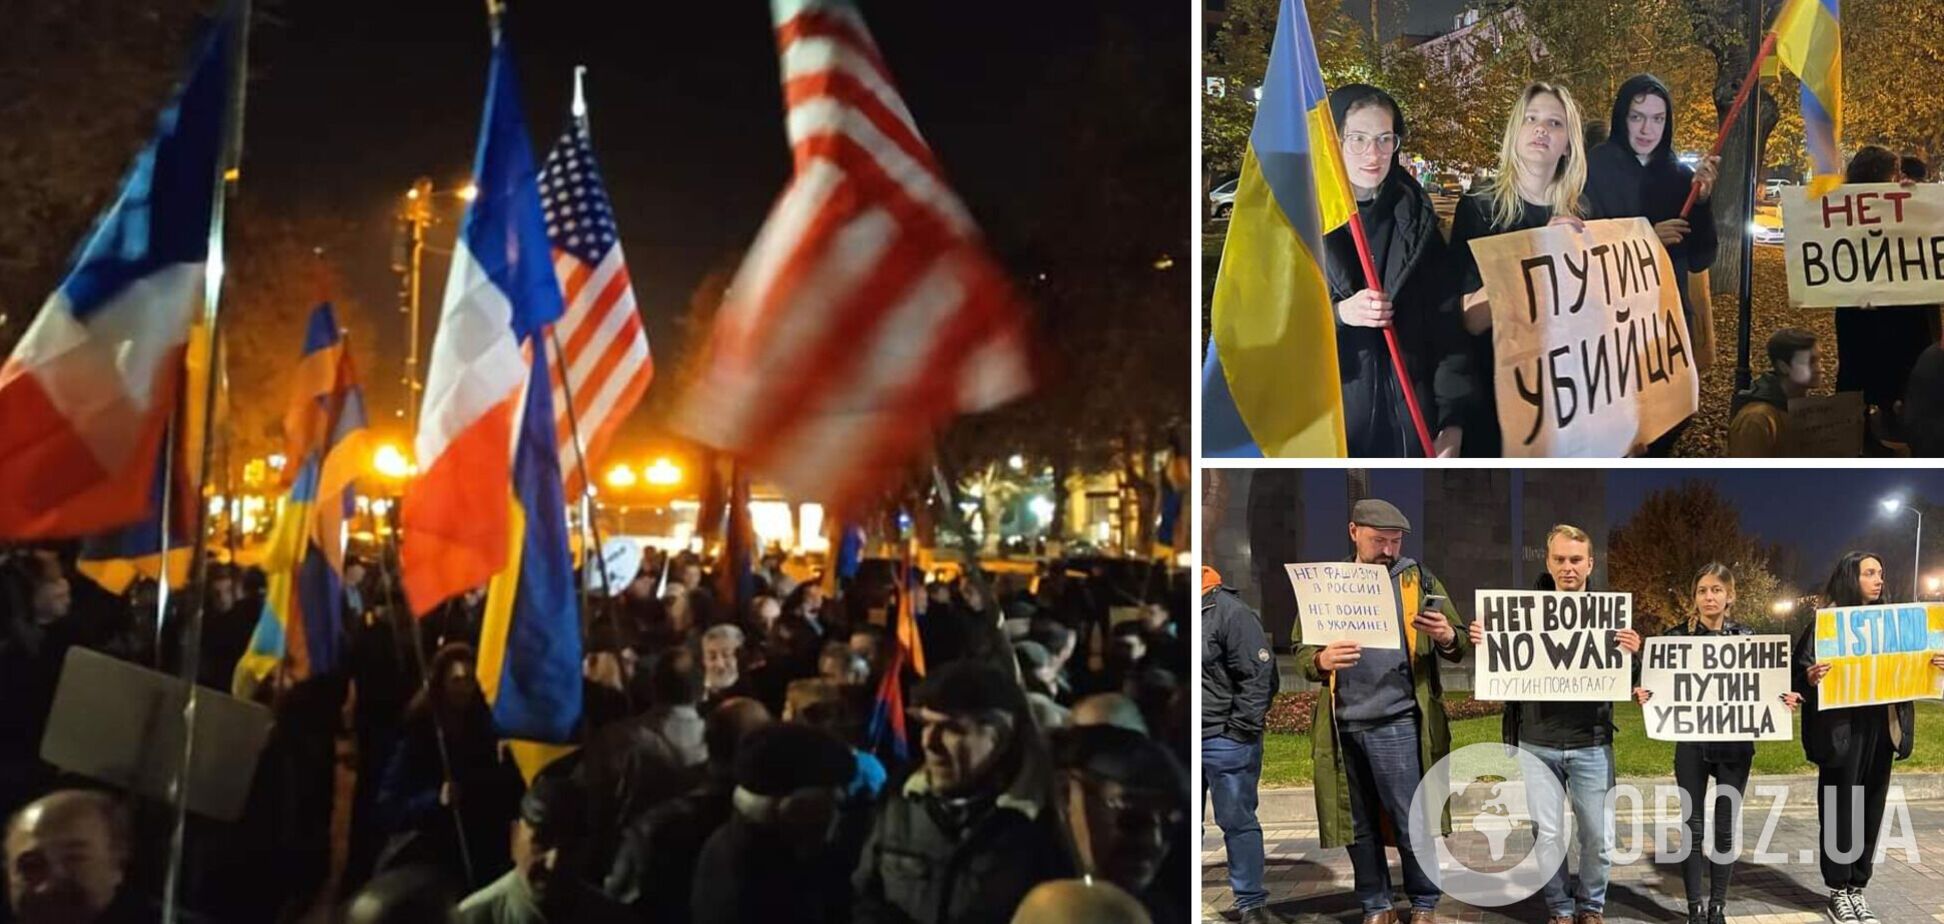 В Єревані напередодні саміту ОДКБ провели антиросійську акцію: люди вийшли з прапорами України і плакатами 'Путін – вбивця'. Фото і відео